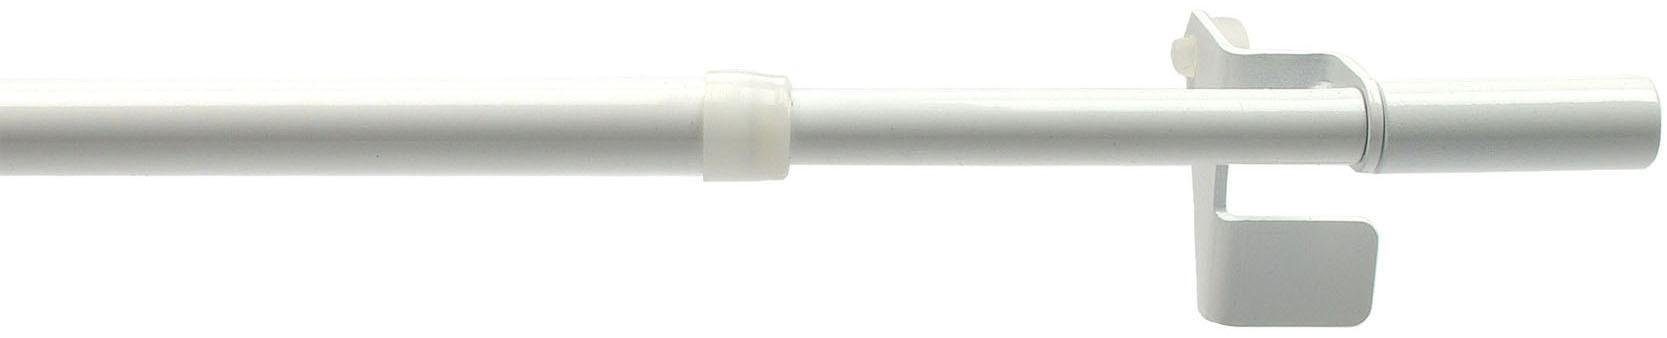 Scheibenstange Press-Fix, Liedeco, Ø 12 mm, 1-läufig, ausziehbar, ohne Bohren, geklemmt, Edelstahl, Kunststoff weiß | Scheibengardinenstangen